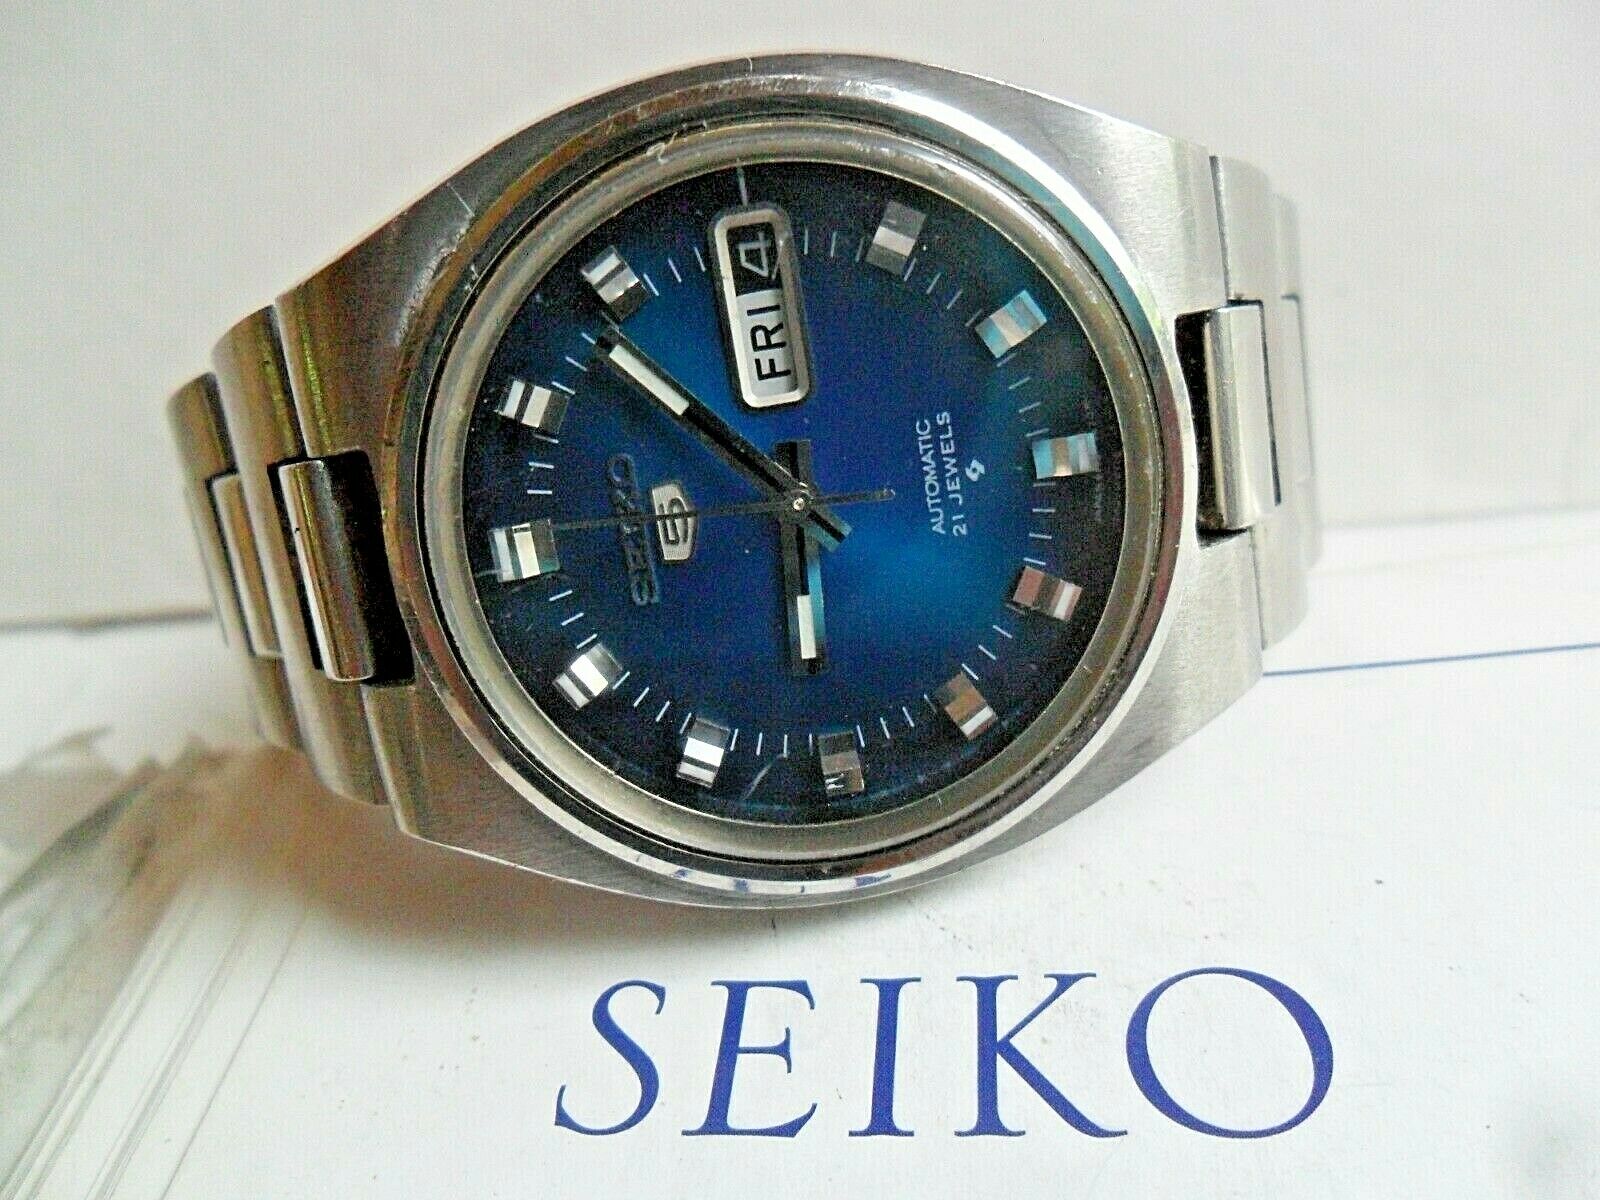 Seiko 5 (6119-7460) Market Price | WatchCharts